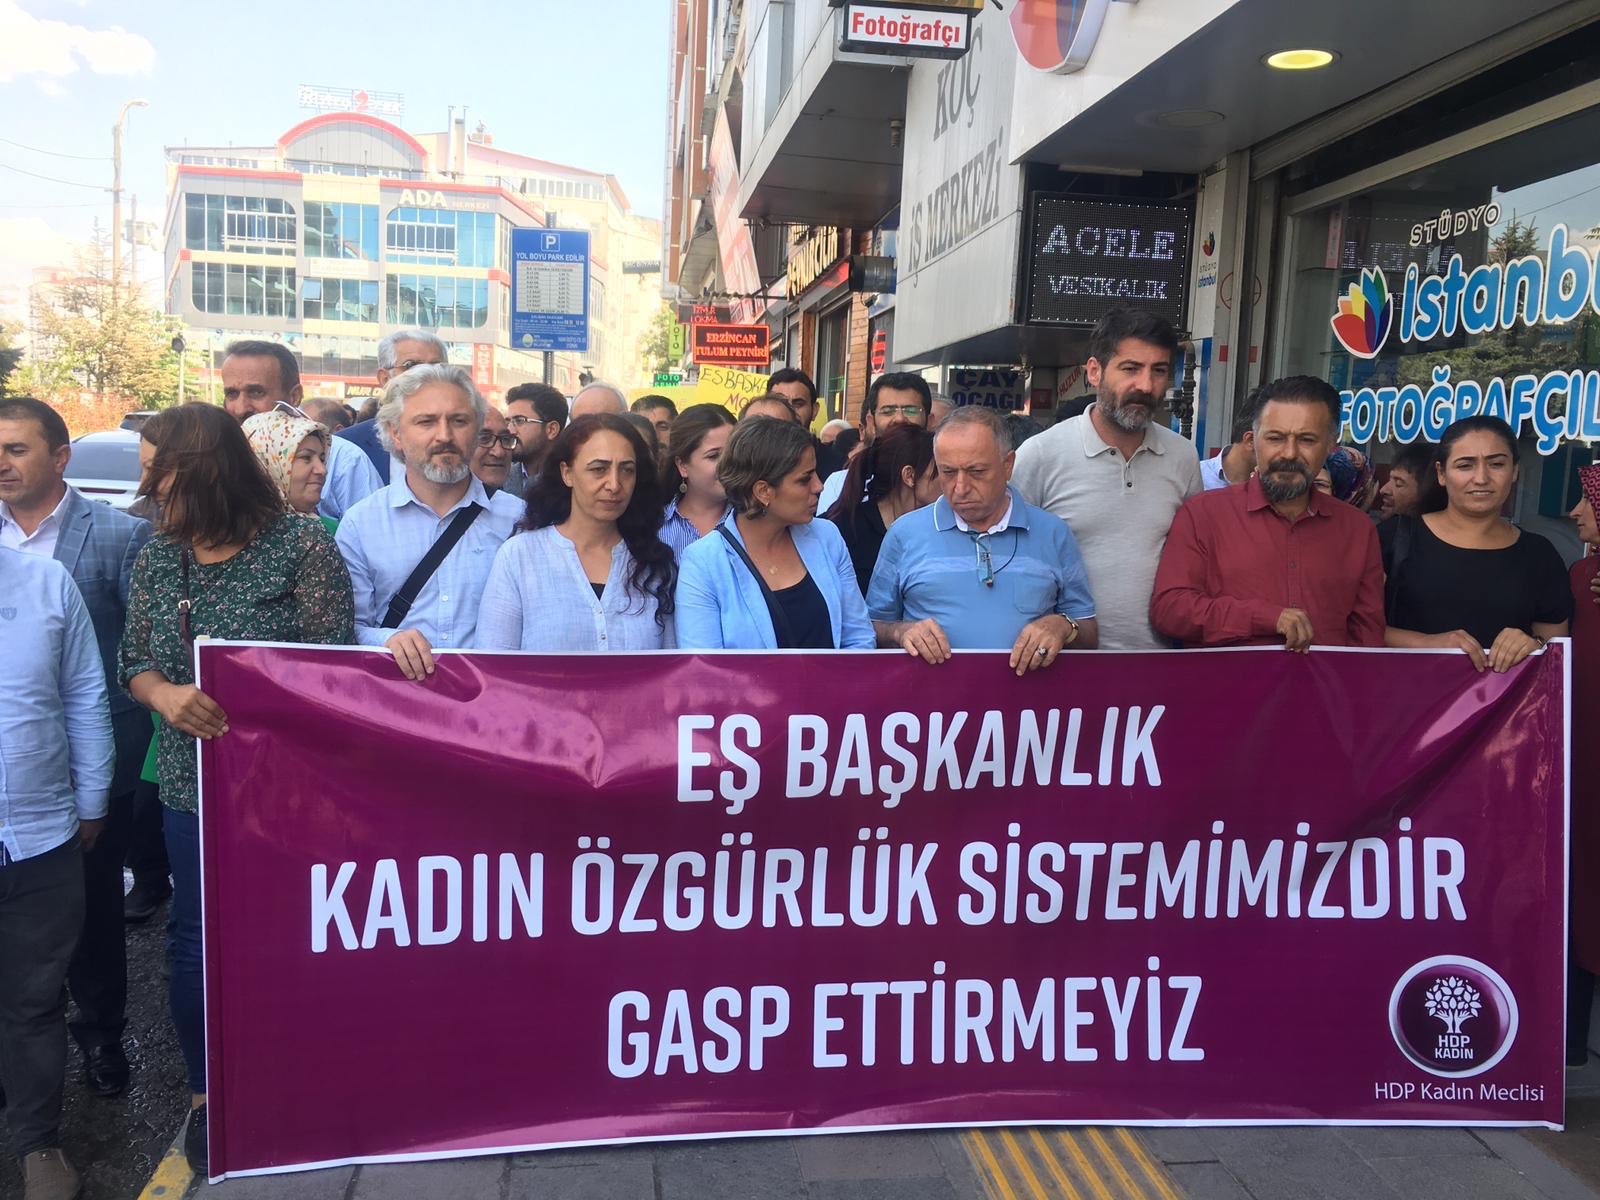 Kayyım atamalarının 20. gününde protestolar devam ediyor: "Darbe kırılıncaya kadar mücadeleye devam"